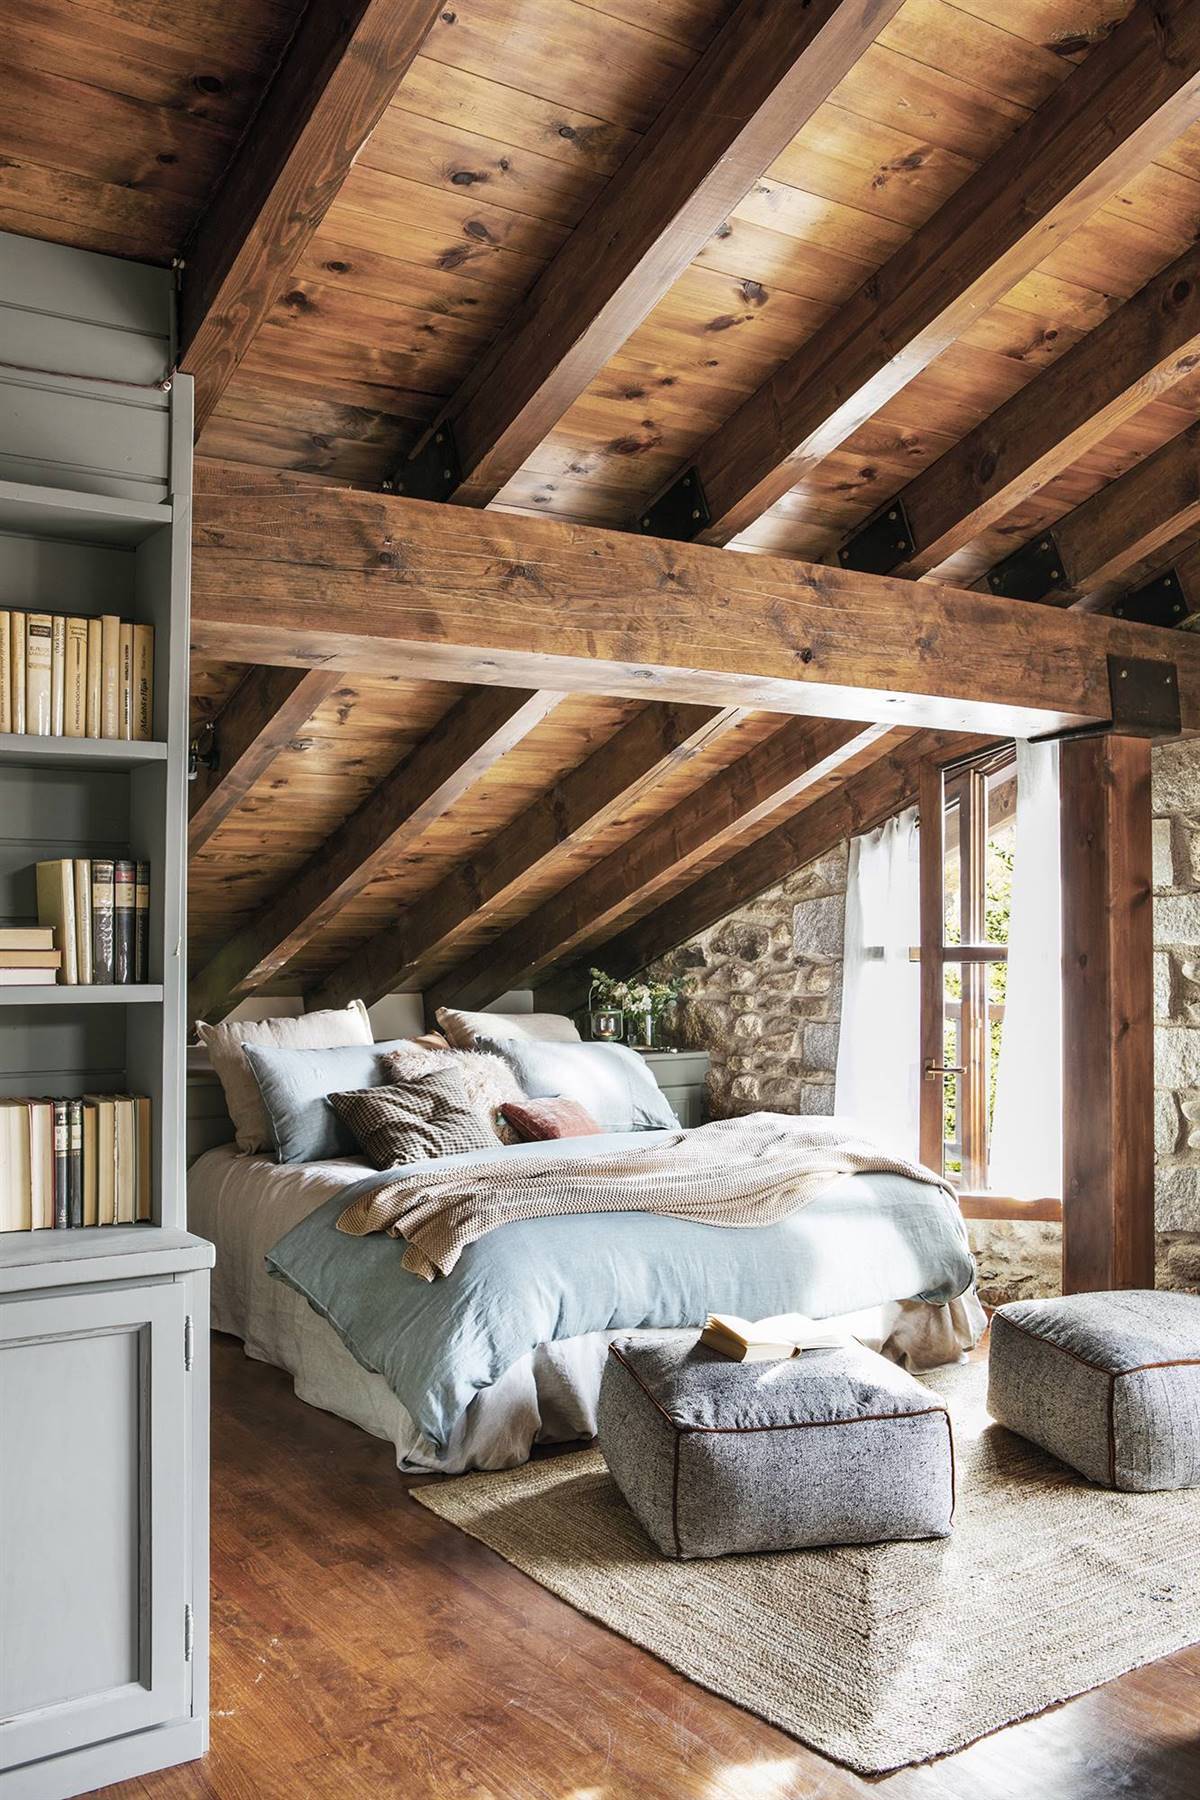 Dormitorio rústico abuhardillado con techos y paredes de madera. 